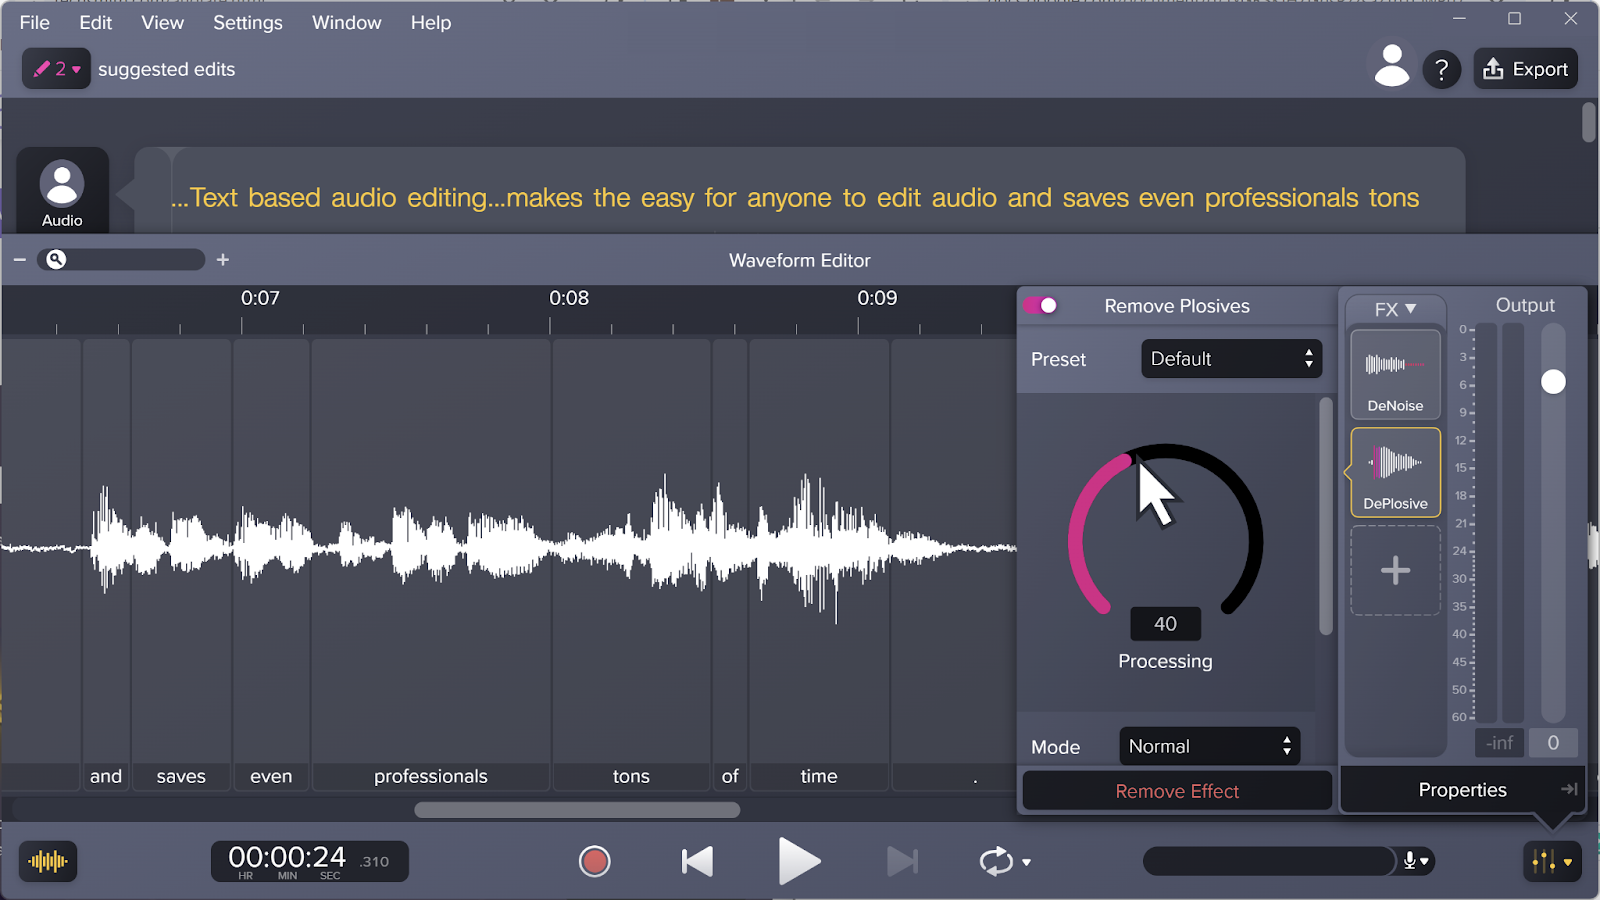 Immagine del software di editing vocale Audiate che riduce al minimo le esplosive con l'effetto Rimuovi esplosive.